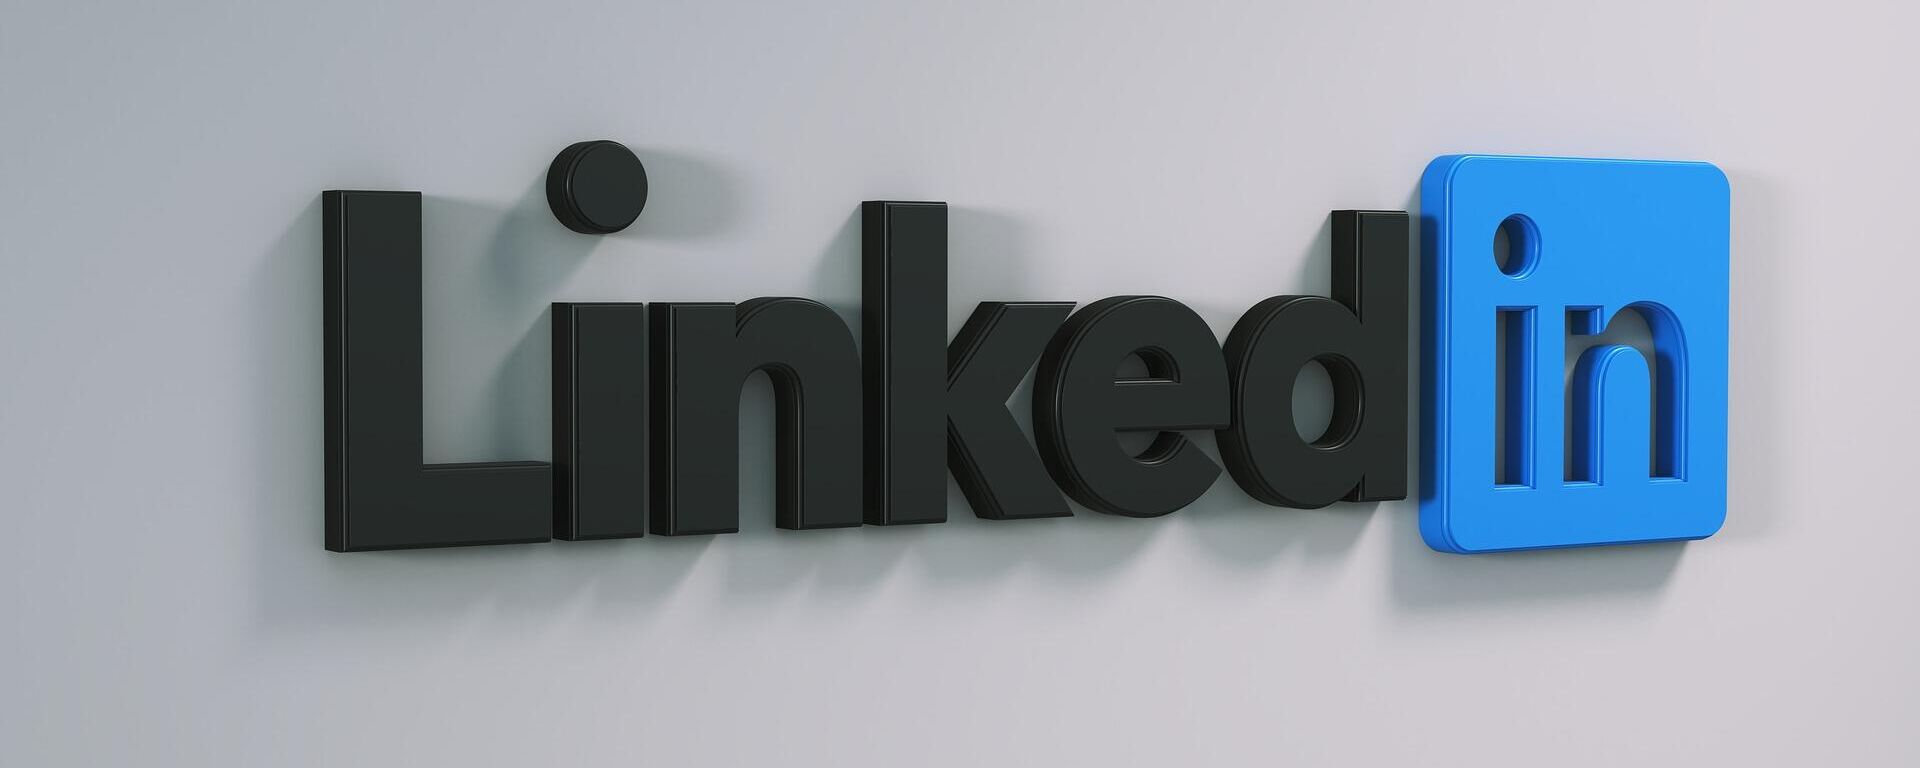 El logo de la plataforma LinkedIn en una pared. Imagen referencial - Sputnik Mundo, 1920, 13.04.2021